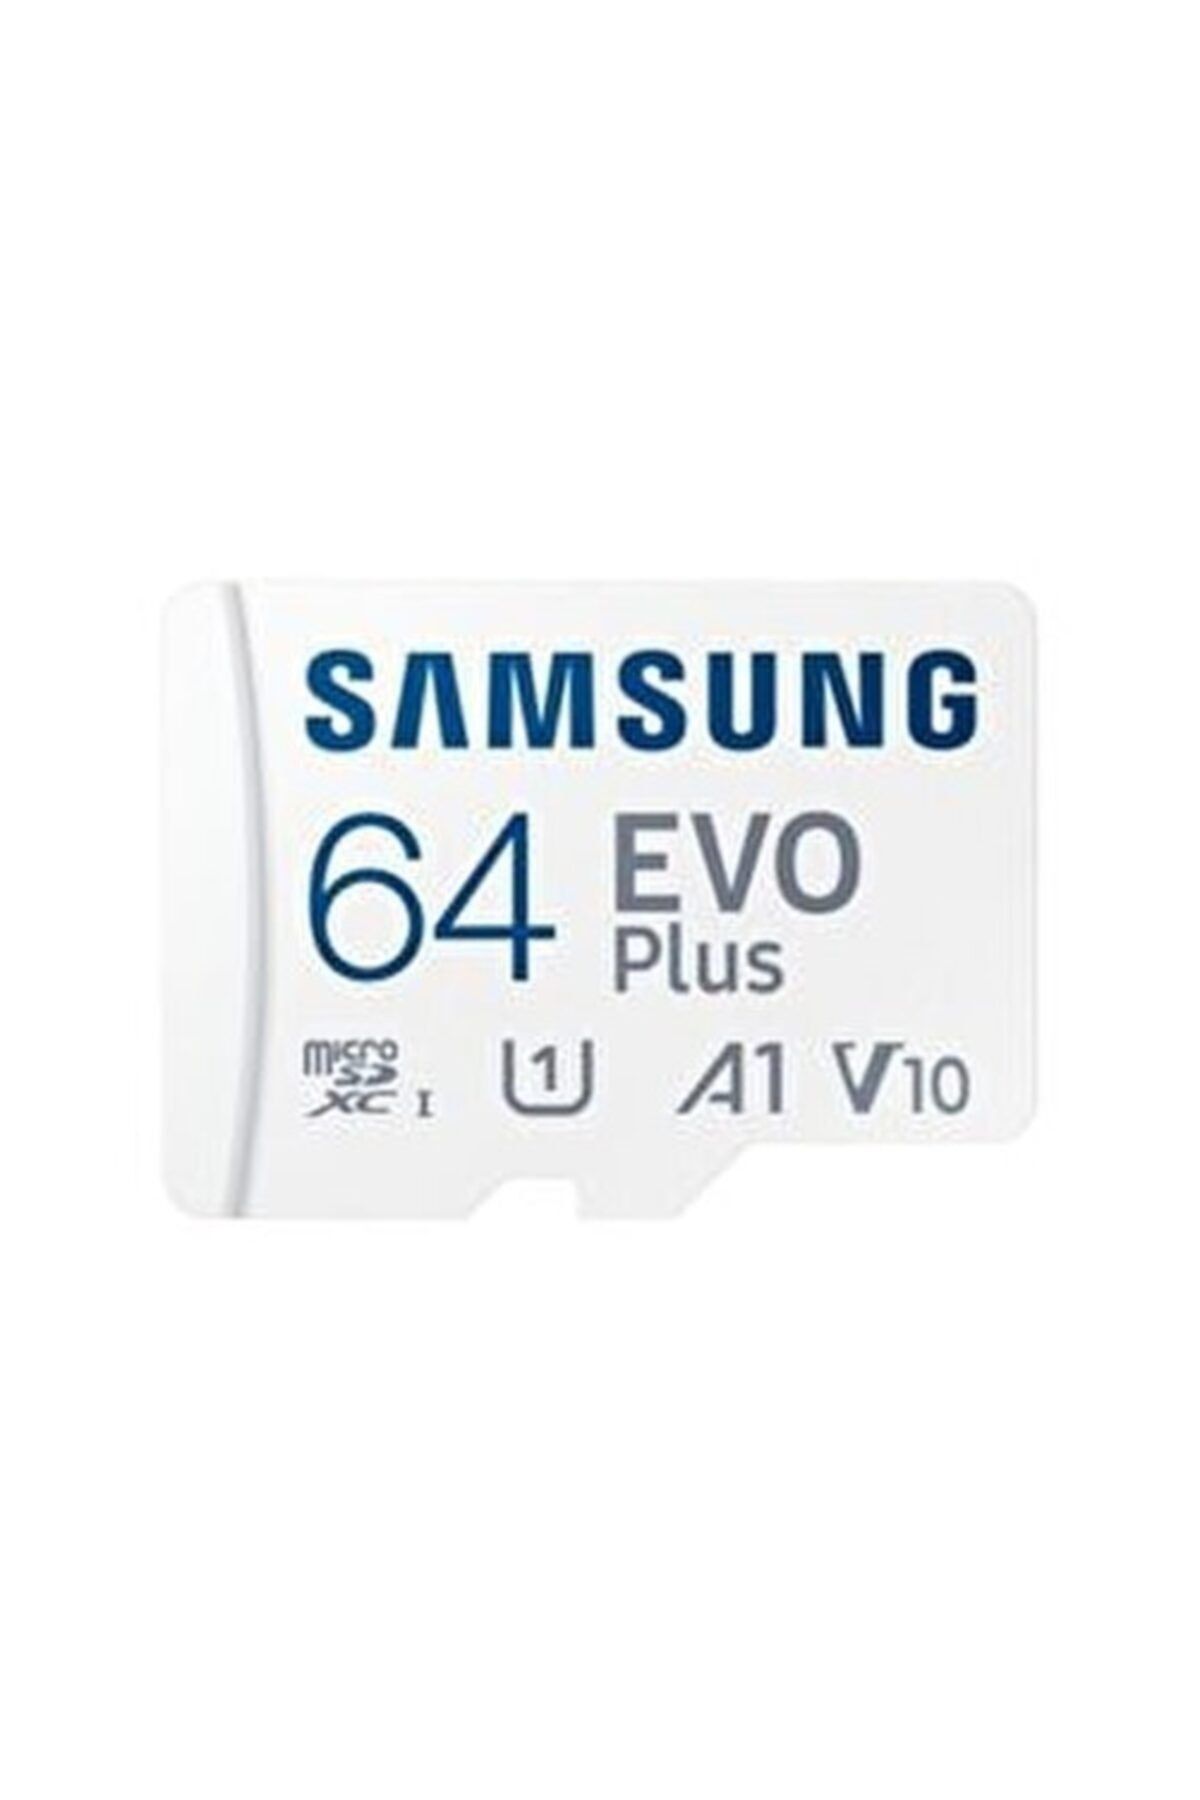 Samsung 64gb Microsd Pro Class10 (90-80MB/SN) Hafıza Kartı Sd Adaptör Mb-mg64da/tr